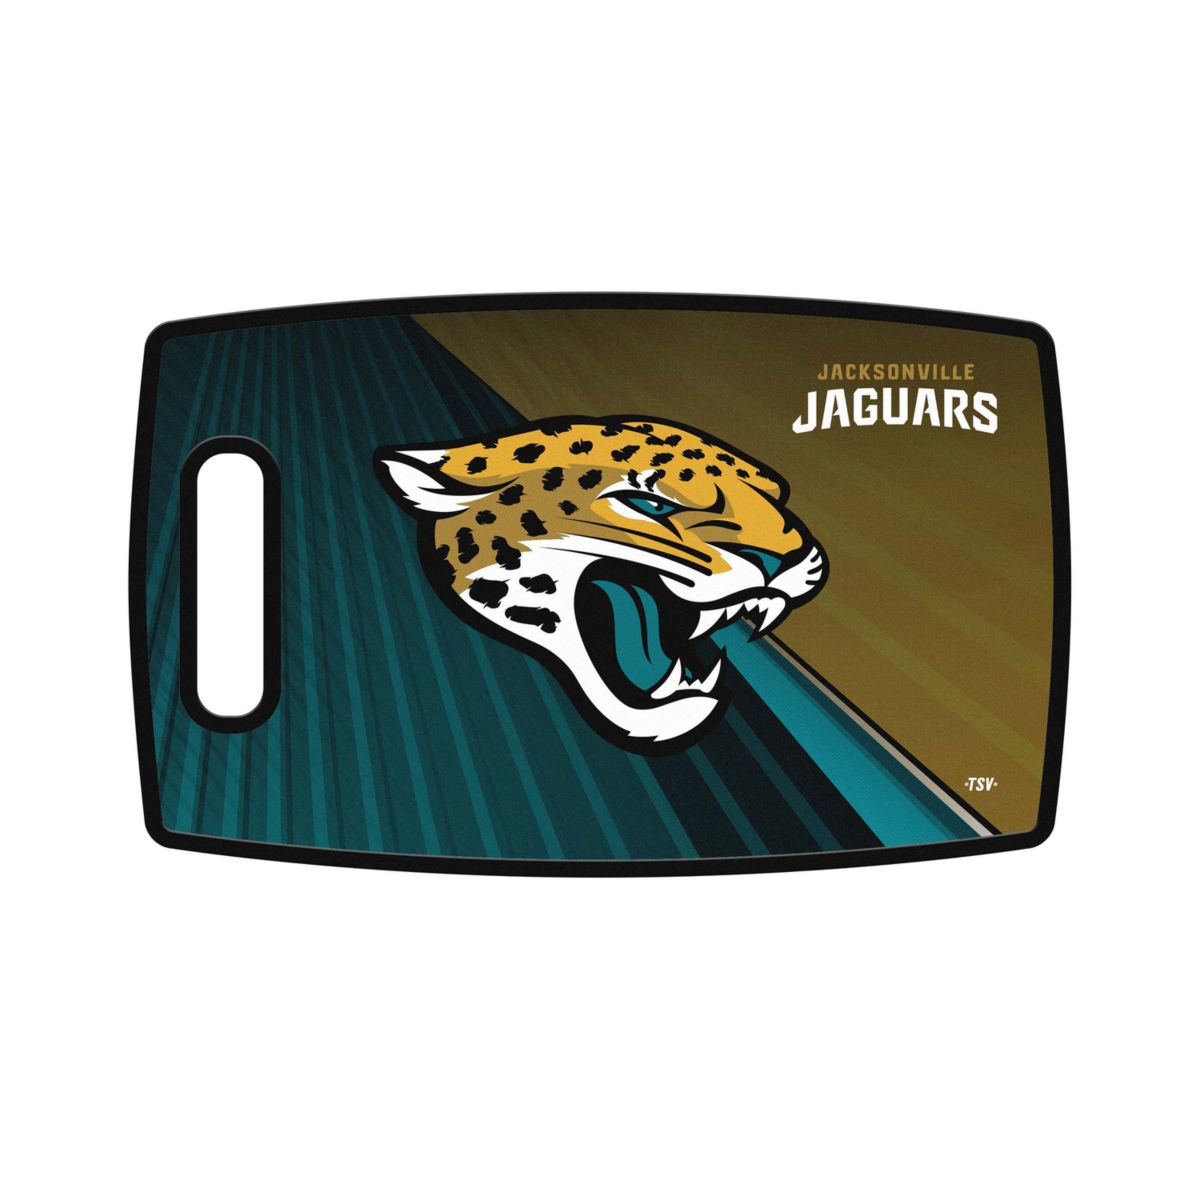 Jacksonville Jaguars Large Cutting Board NFL